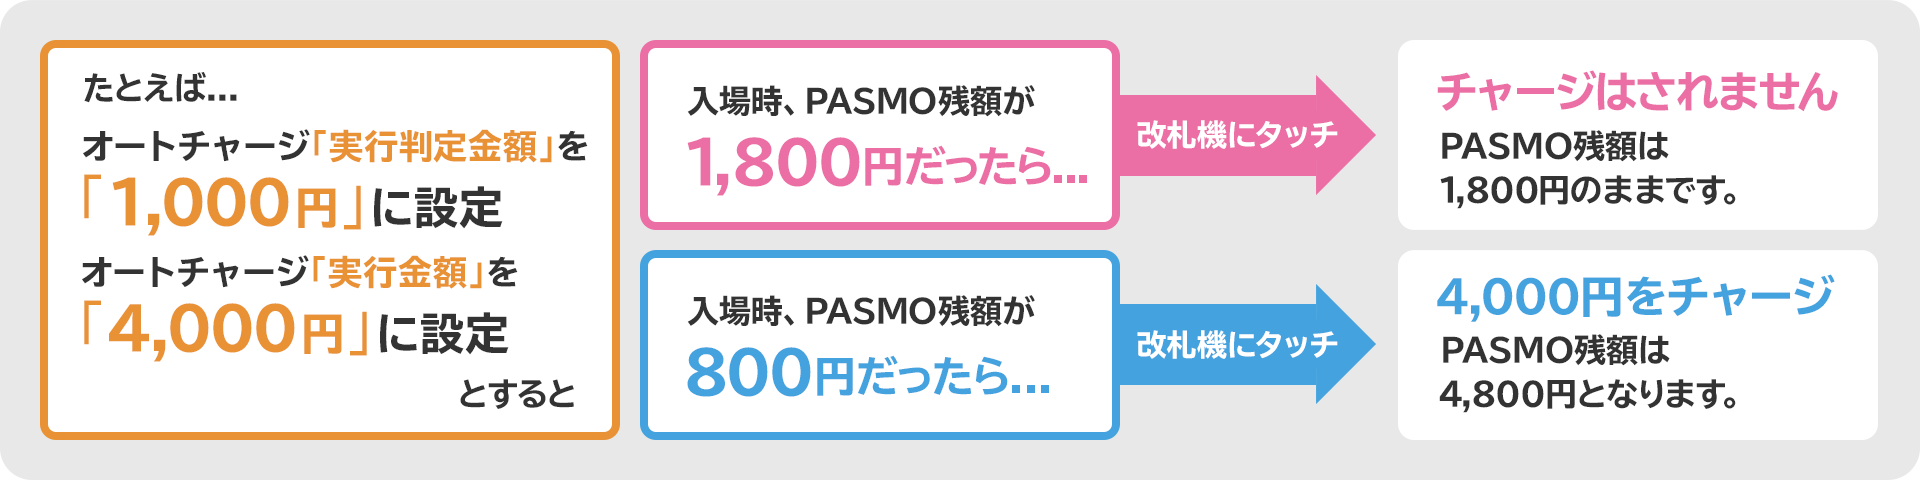 たとえば、「オートチャージ実行判定金額」を「1,000円」と設定すると、入場時PASOMOの残額が1,080円だった場合改札機にタッチしてもチャージされません。「オートチャージ実行判定金額」を「4,000円」と設定すると、入場時のPASMOの残額が800円だった場合改札機にタッチすると4,000円がチャージされます。